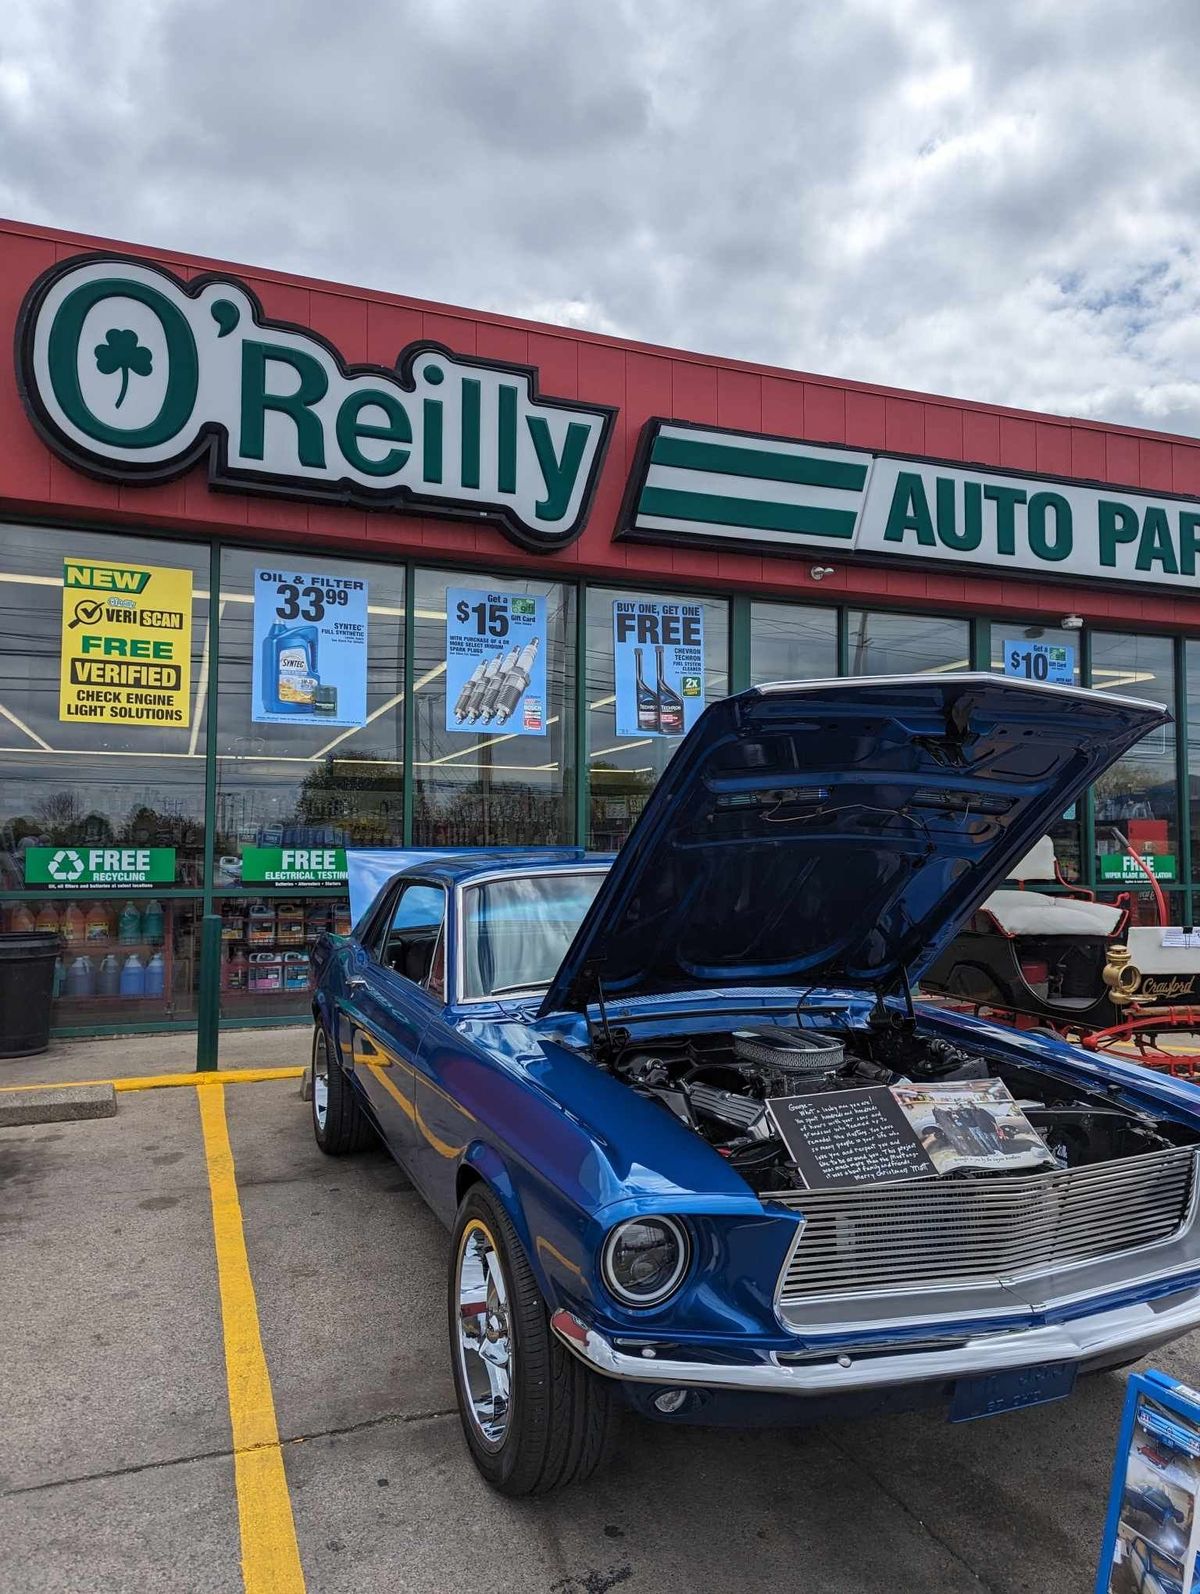 RevvedUp Fun Car Show @ O'Reilly's Auto Parts Harrisburg Pike 